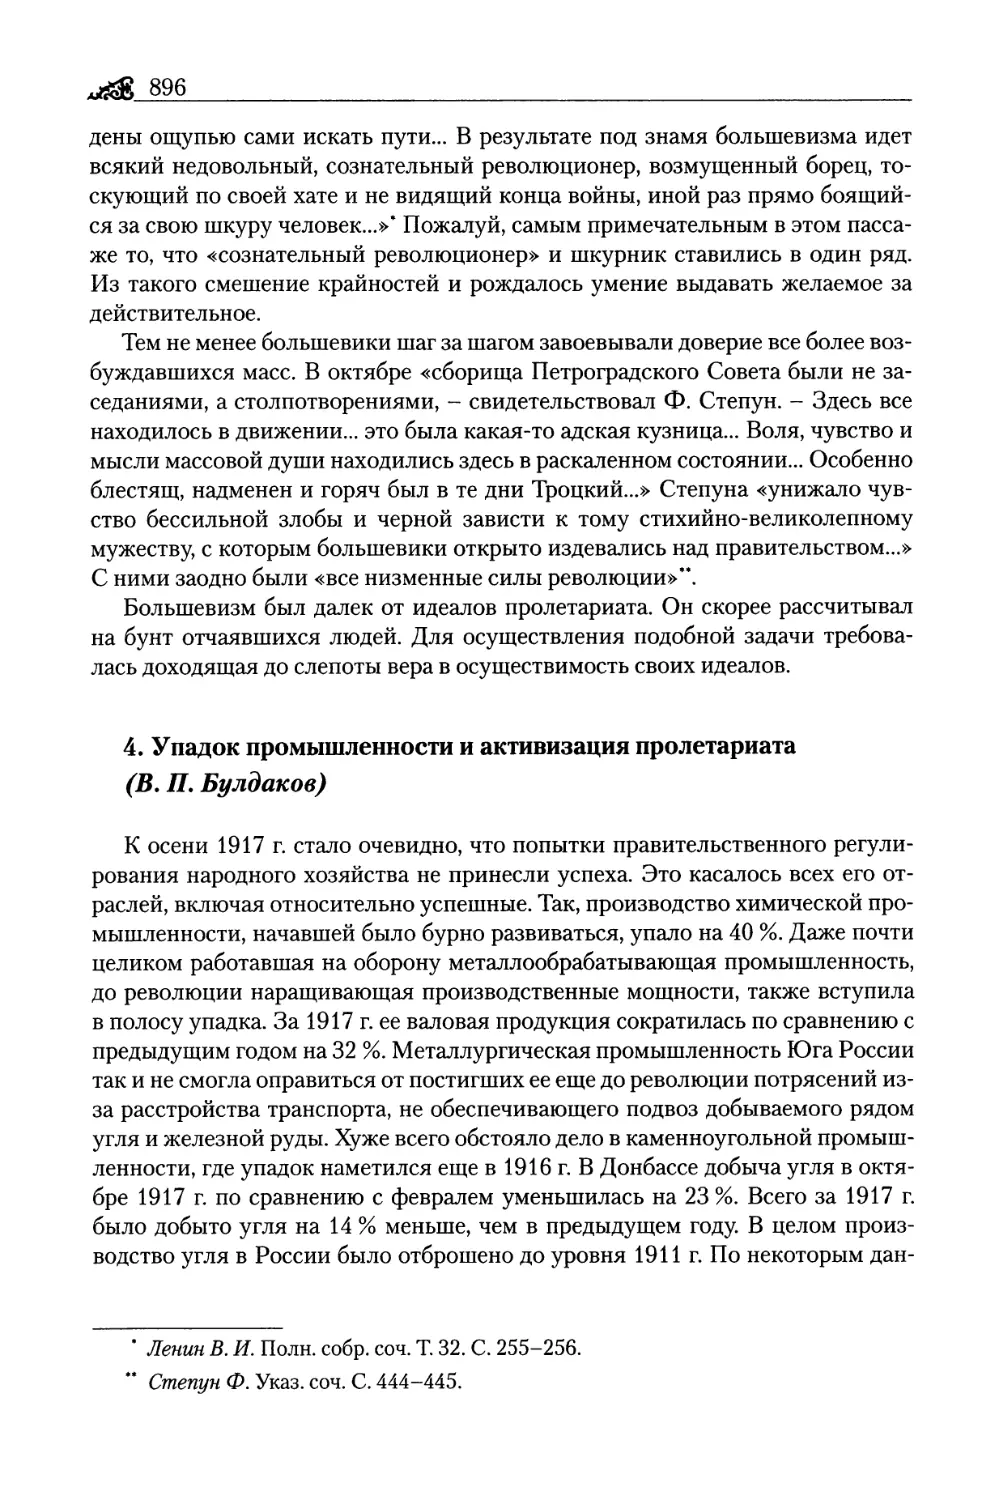 4. Упадок промышленности и активизация пролетариата (В. П. Булдаков)